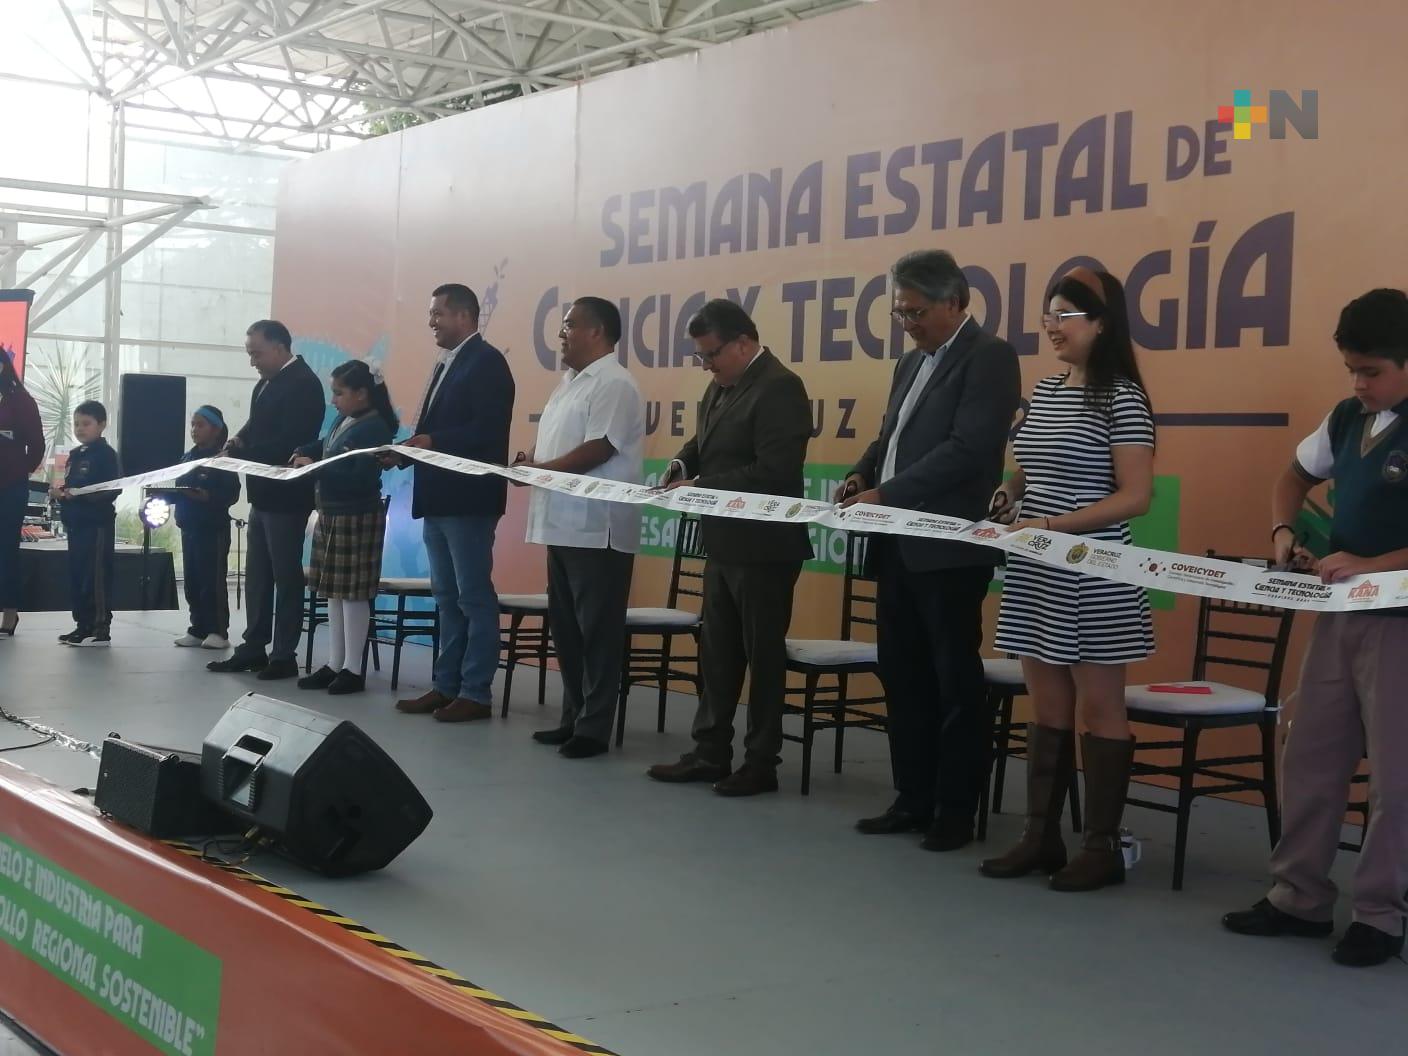 Inauguran la Semana Estatal de Ciencia y Tecnología Veracruz 2022 en Xalapa